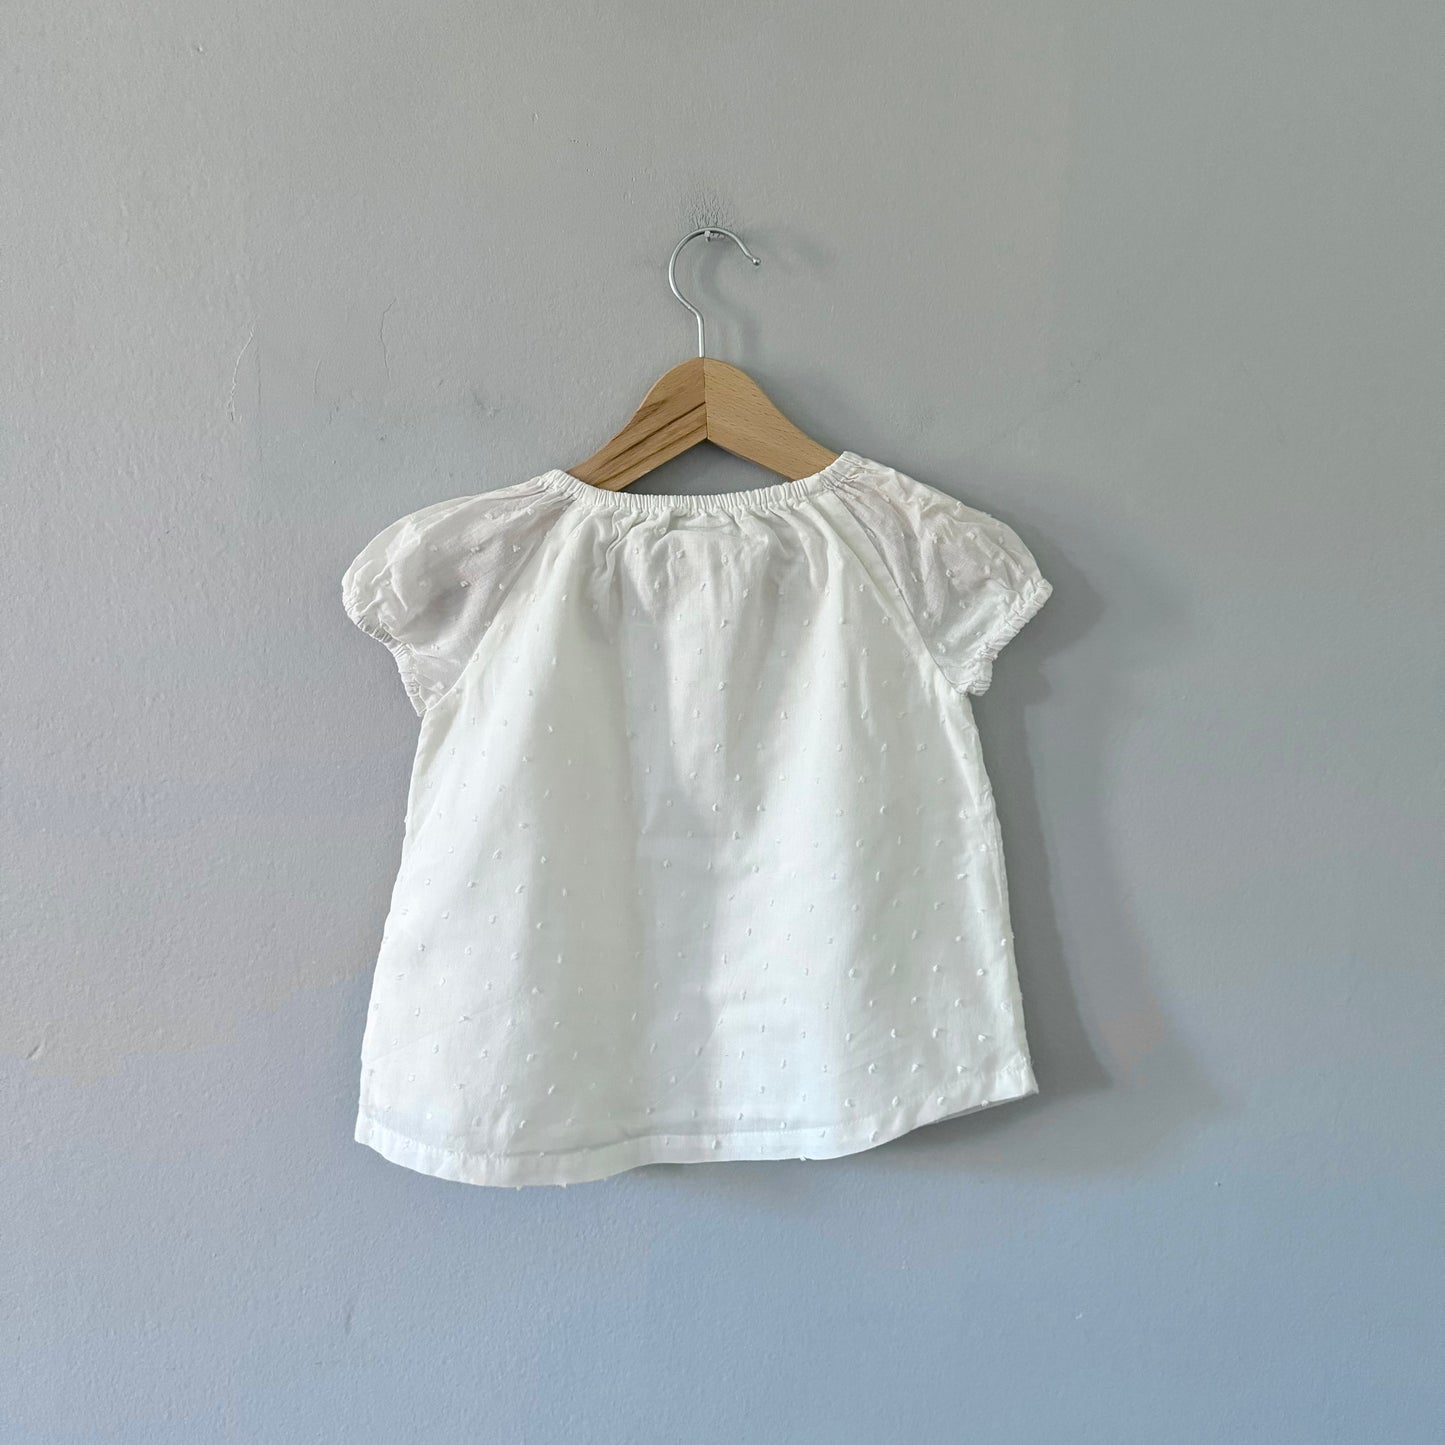 Rachel Zoe / White tank blouse / 12M